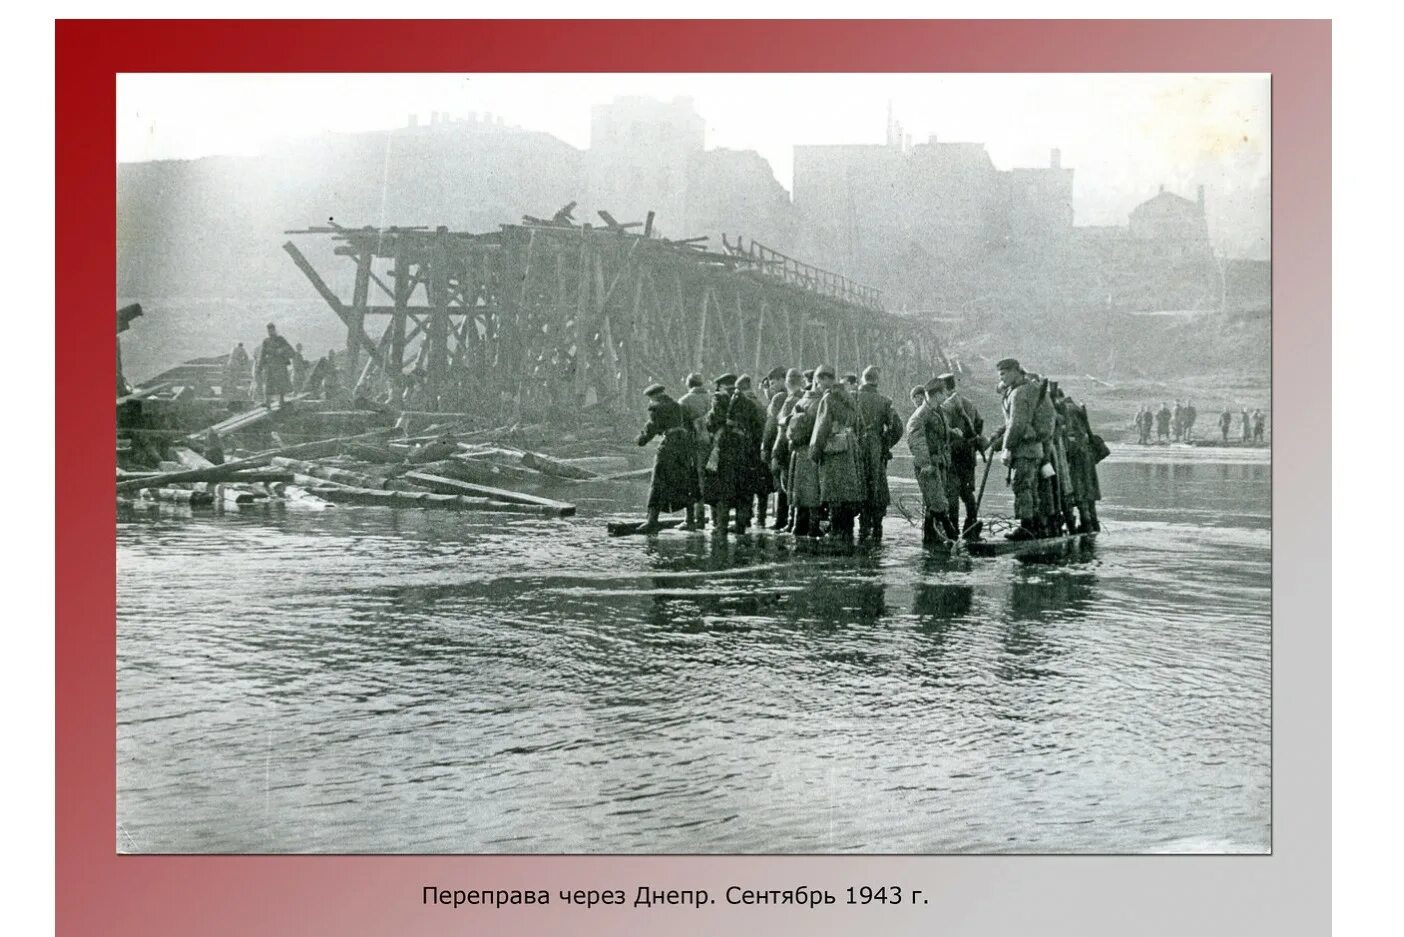 Переправа днепр. Переправа через Днепр 1943. 25 Сентября 1943 года Смоленск. Переправа через Днепр 1943 фото. Карта переправы через Днепр 1943 фото.